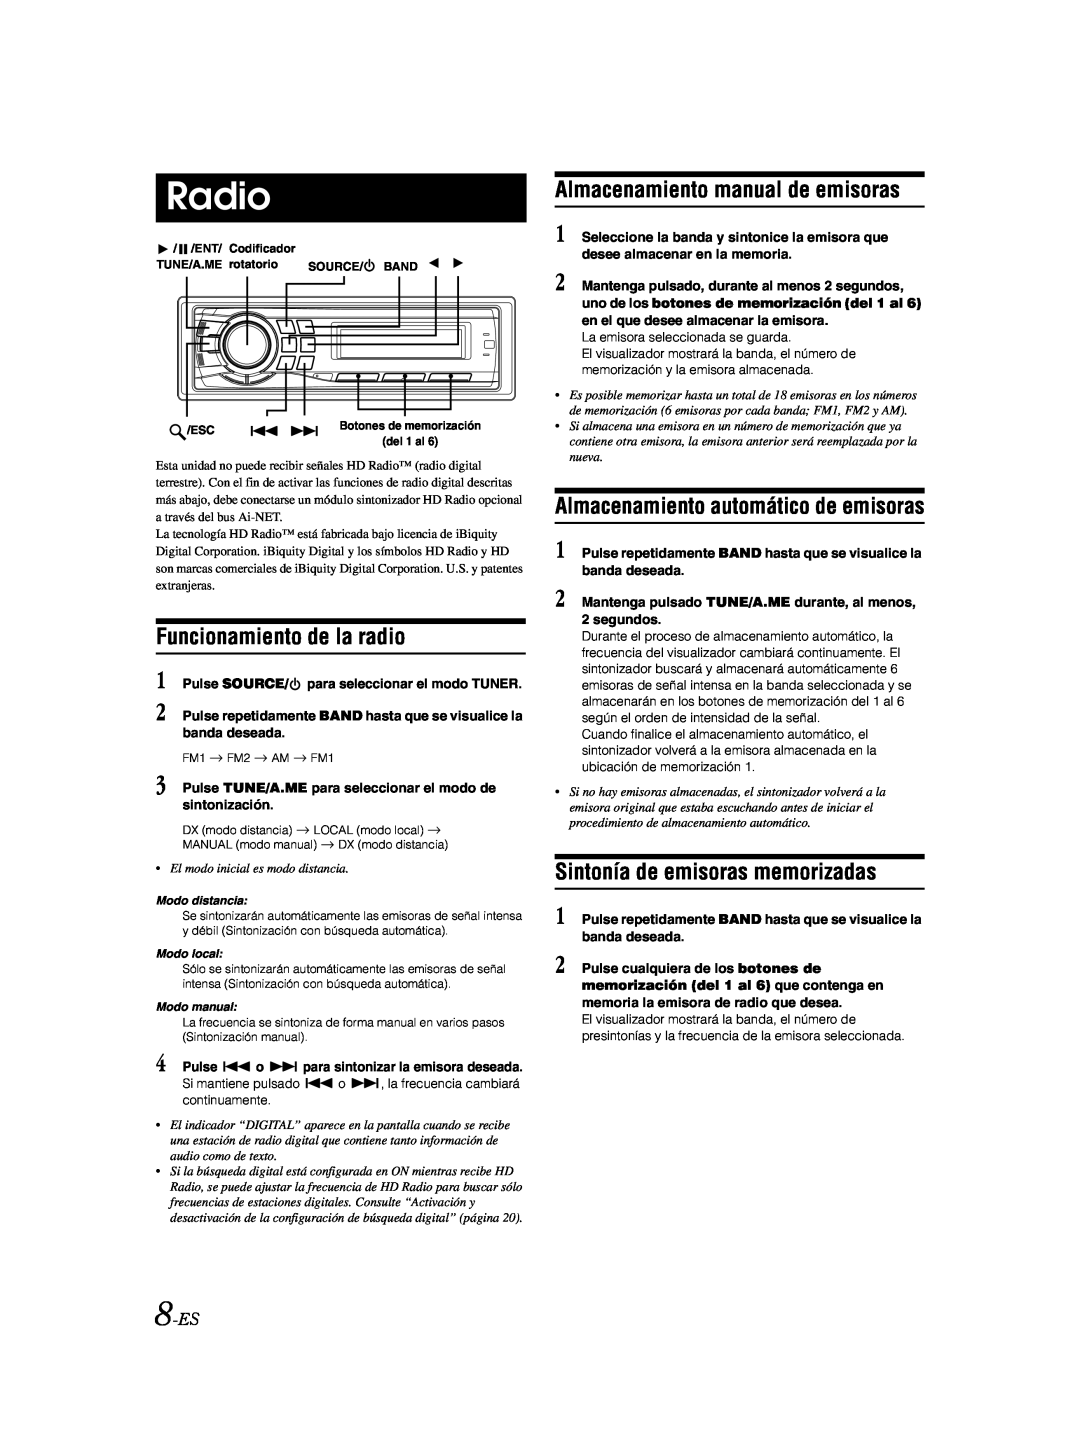 Alpine CDA-9885 Funcionamiento de la radio, Almacenamiento manual de emisoras, Almacenamiento automático de emisoras, 8-ES 